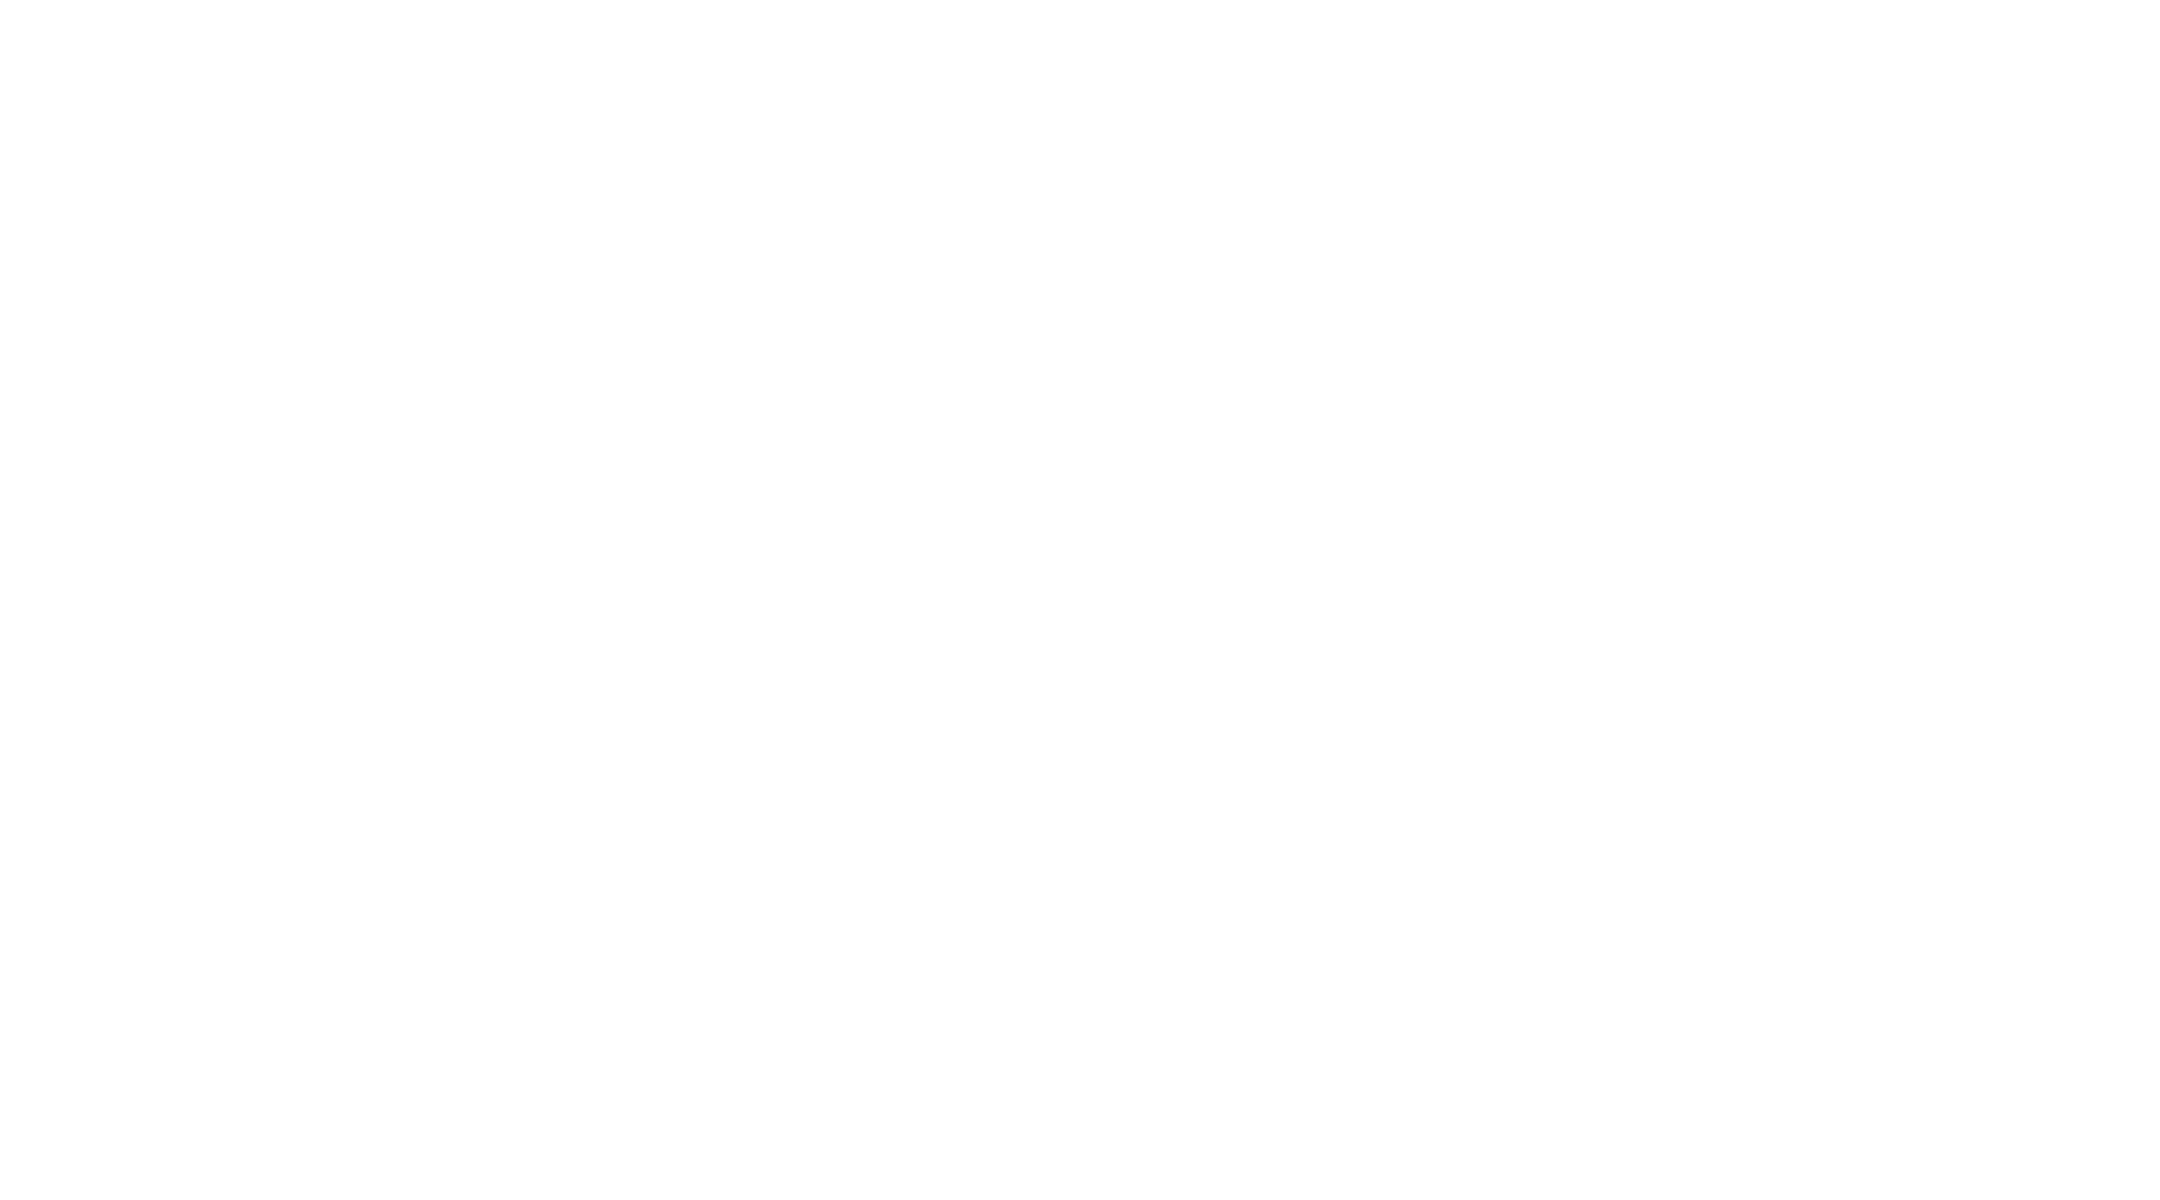 Flo-Logo